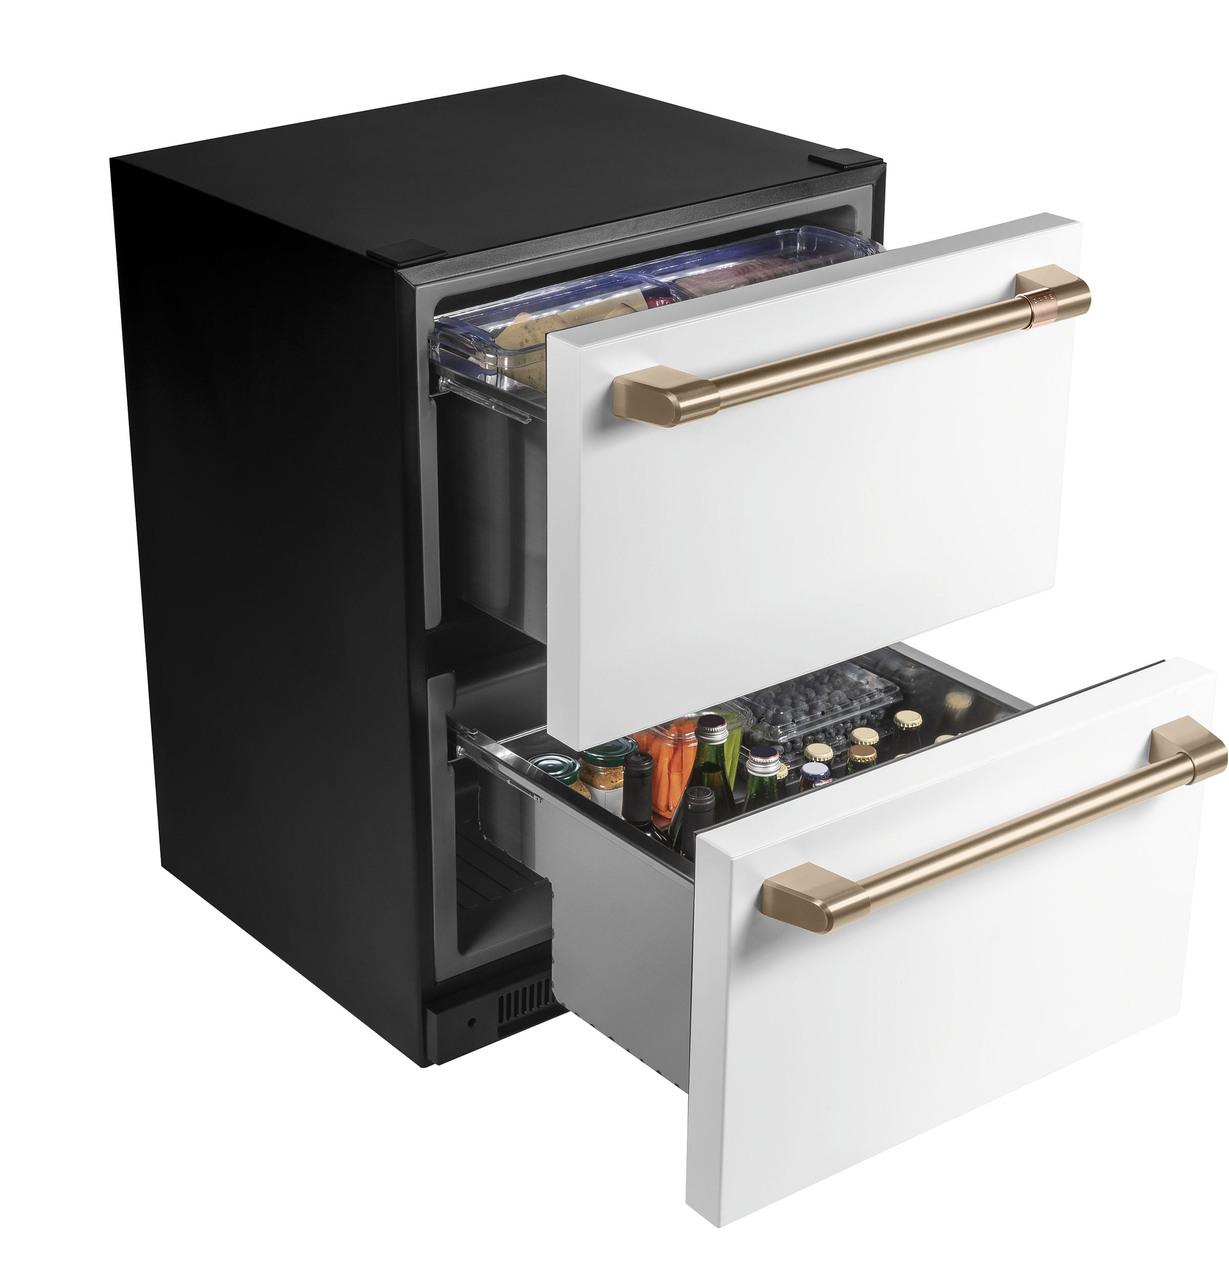 Cafe Caf(eback)™ 5.7 Cu. Ft. Built-In Dual-Drawer Refrigerator